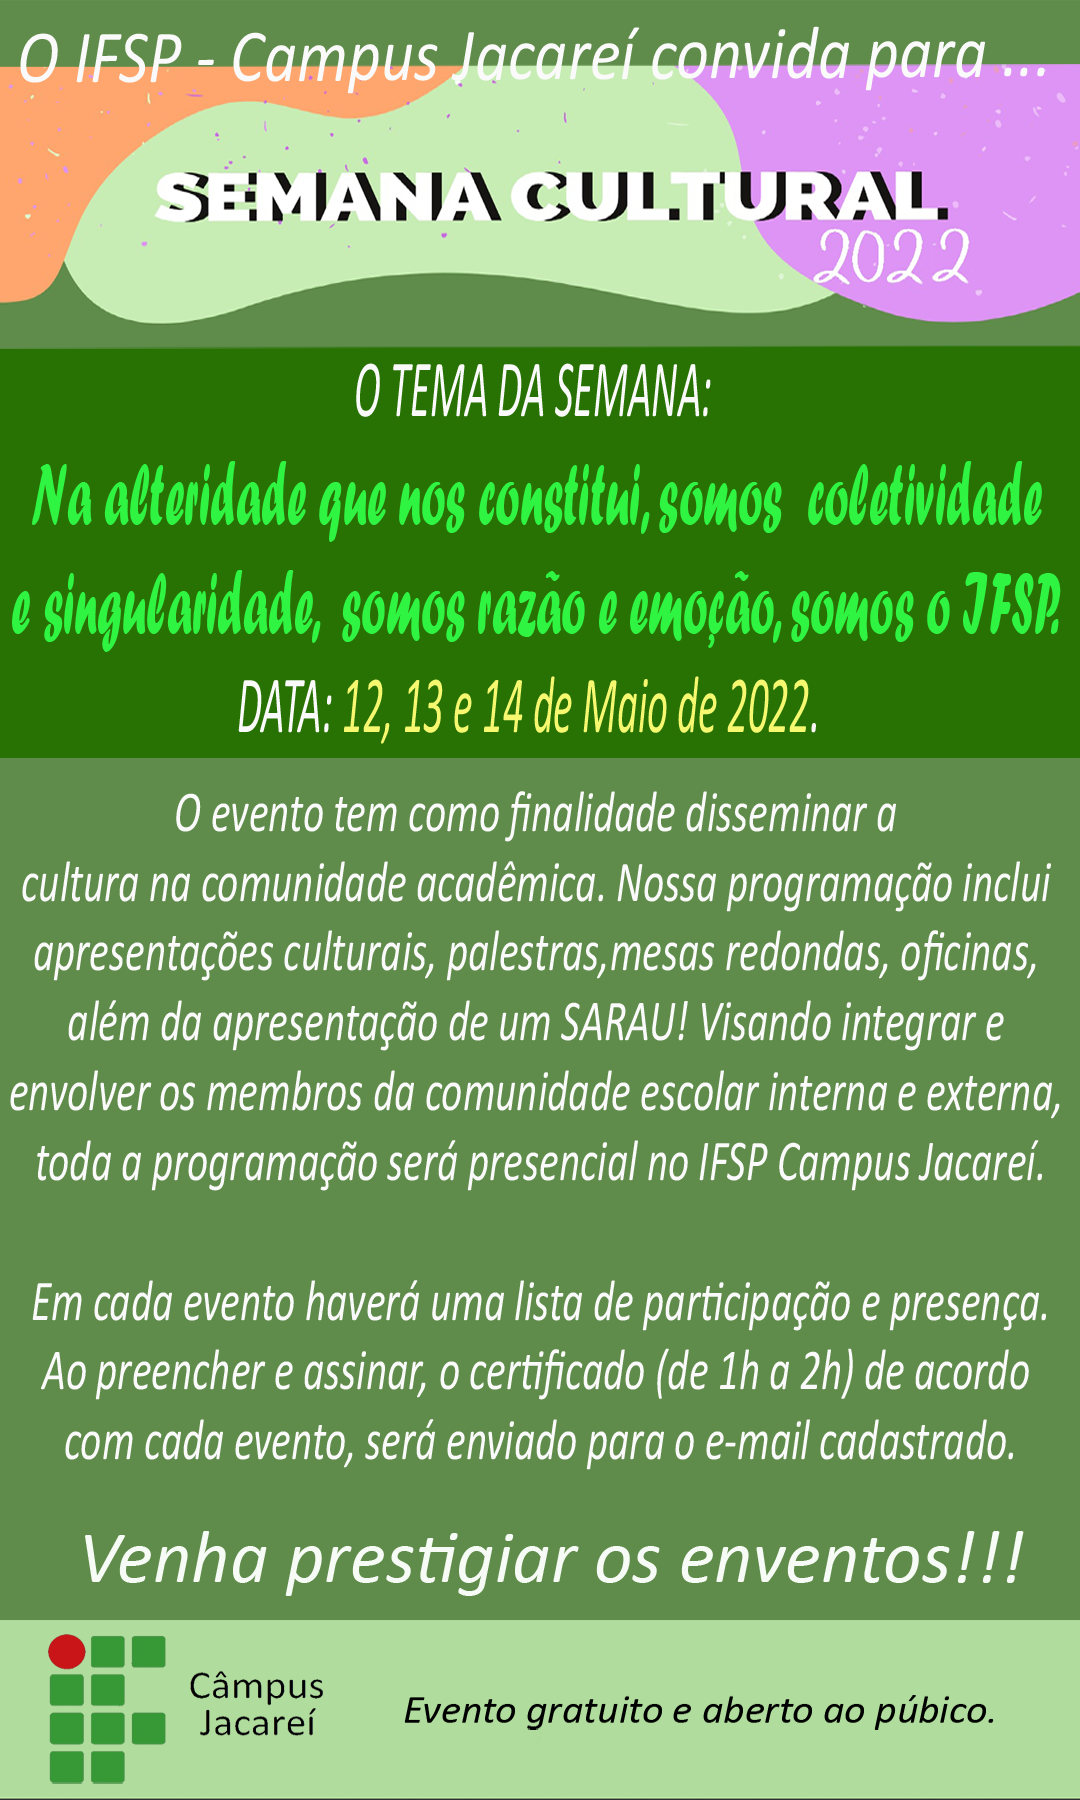 Foto de Semana Cultural IFSP-JCR 2022 - Técnica Vocal